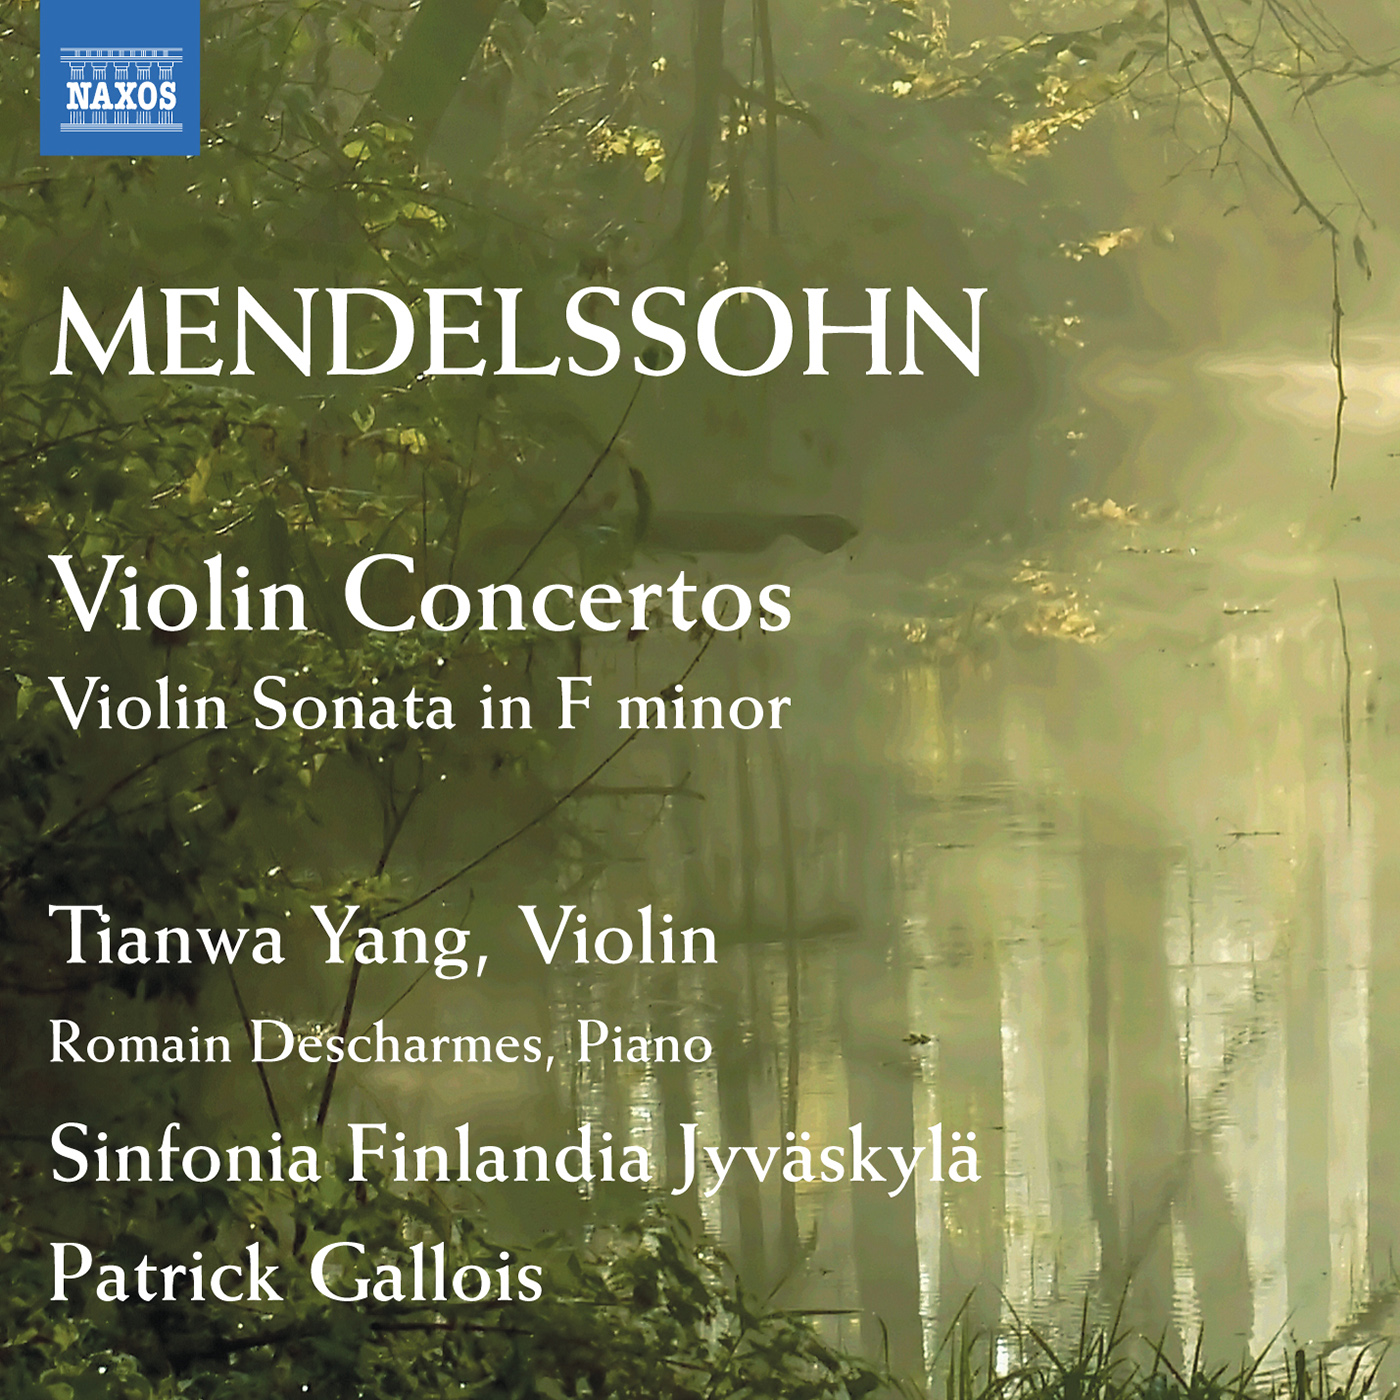 Violin Concerto in E Minor, Op. 64, MWV O14: I. Allegro molto appassionato - Violin Concerto in E Minor, Op. 64, MWV O14